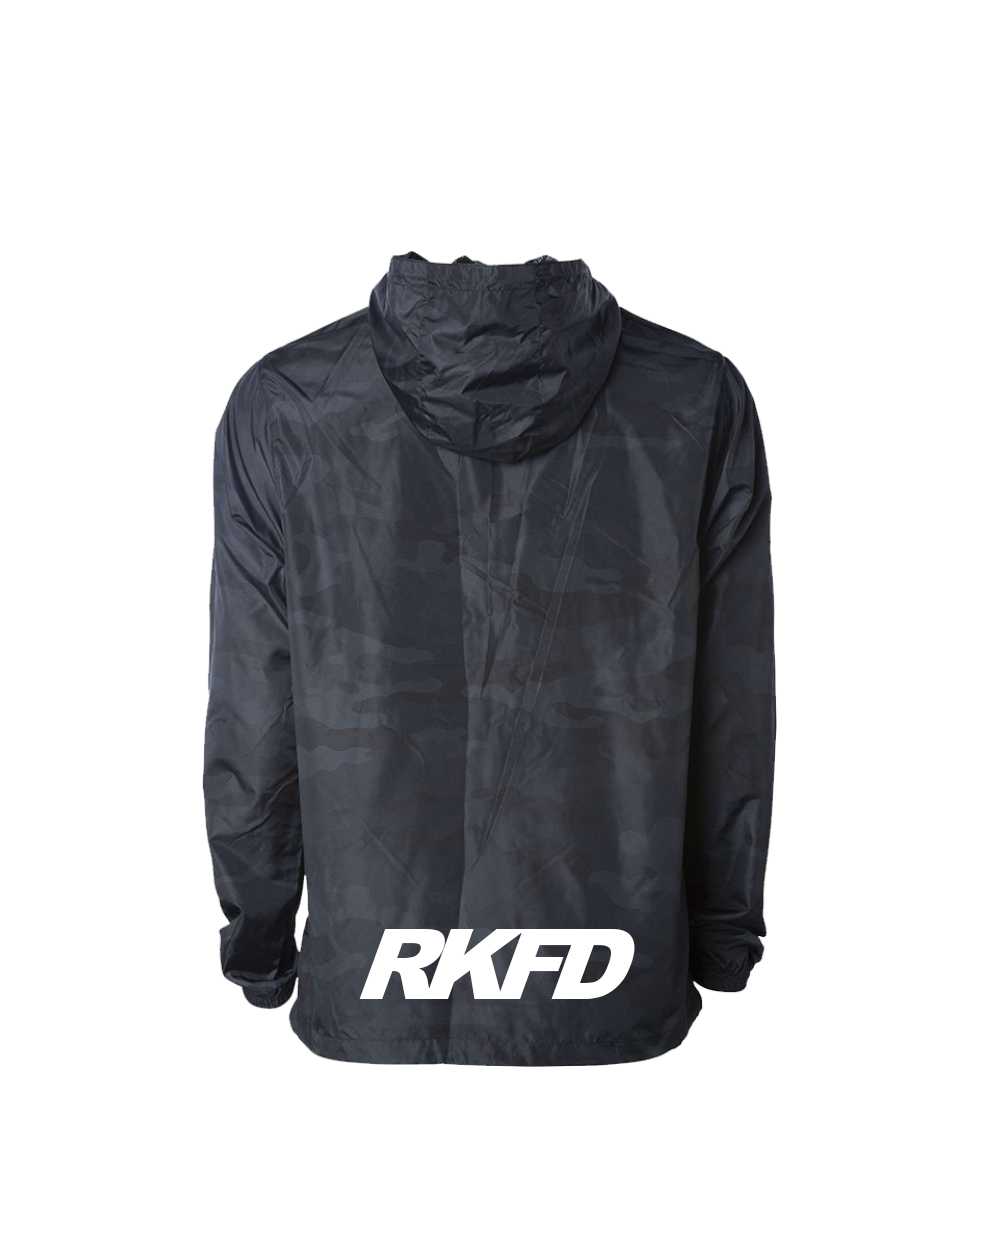 RKFD Windbreaker (Black Camo)